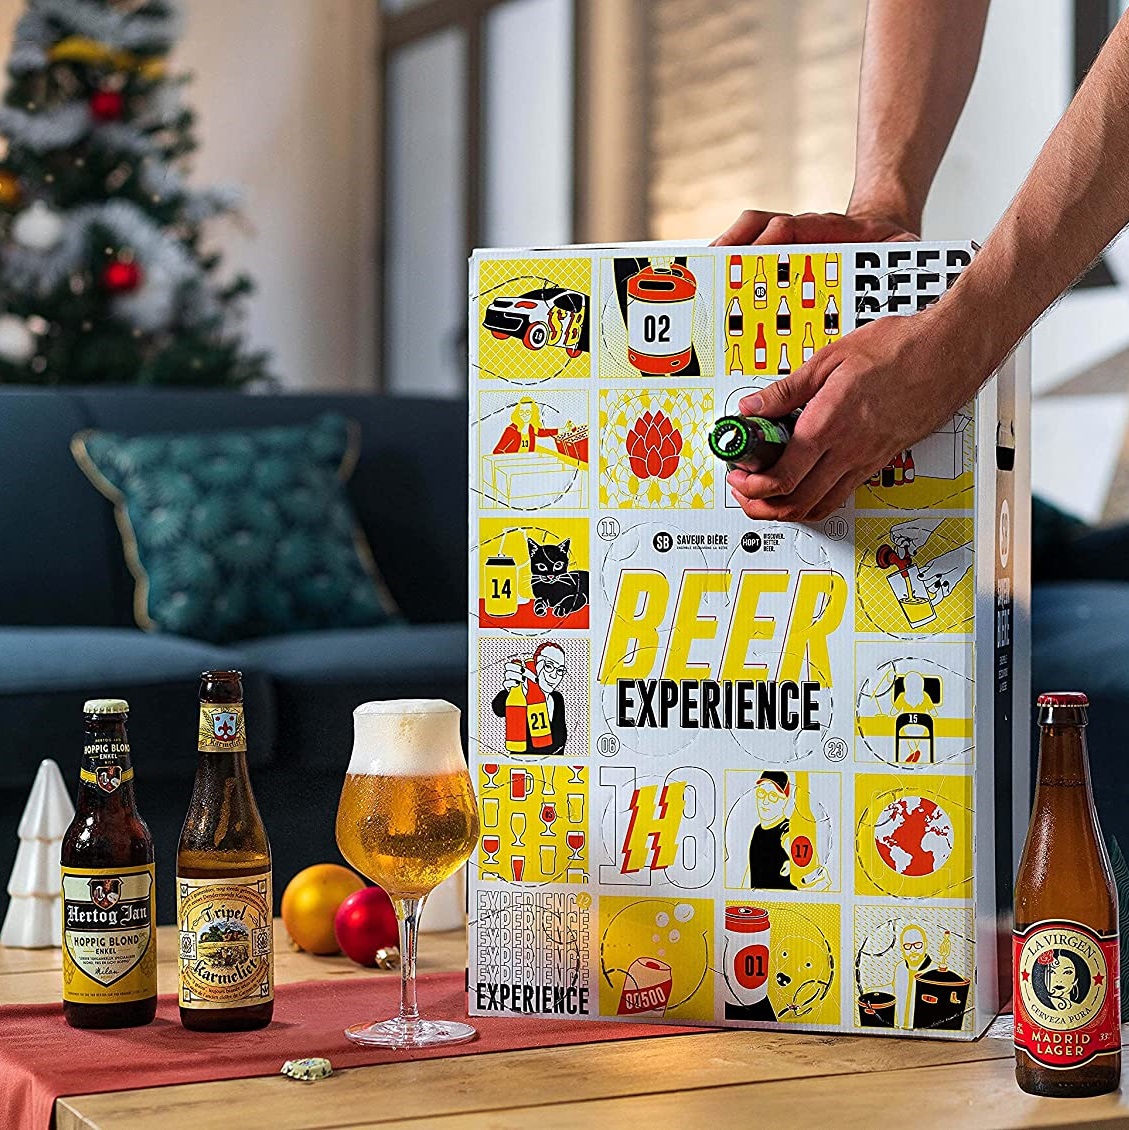 Coffret cadeau Tour des Bières - 24 bières du Monde